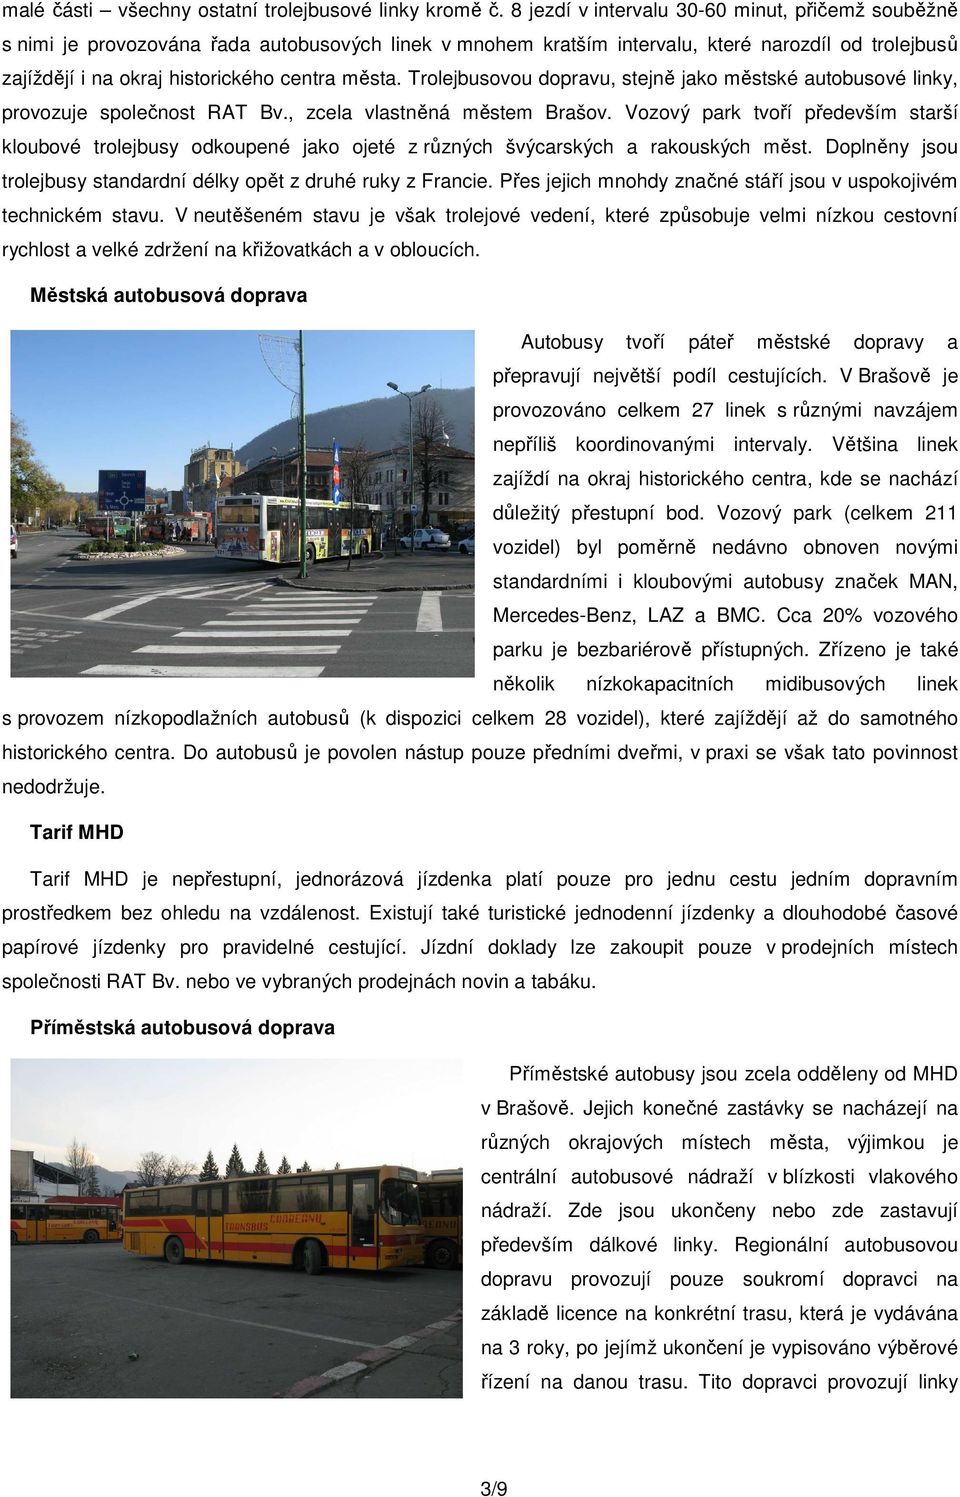 Trolejbusovou dopravu, stejně jako městské autobusové linky, provozuje společnost RAT Bv., zcela vlastněná městem Brašov.